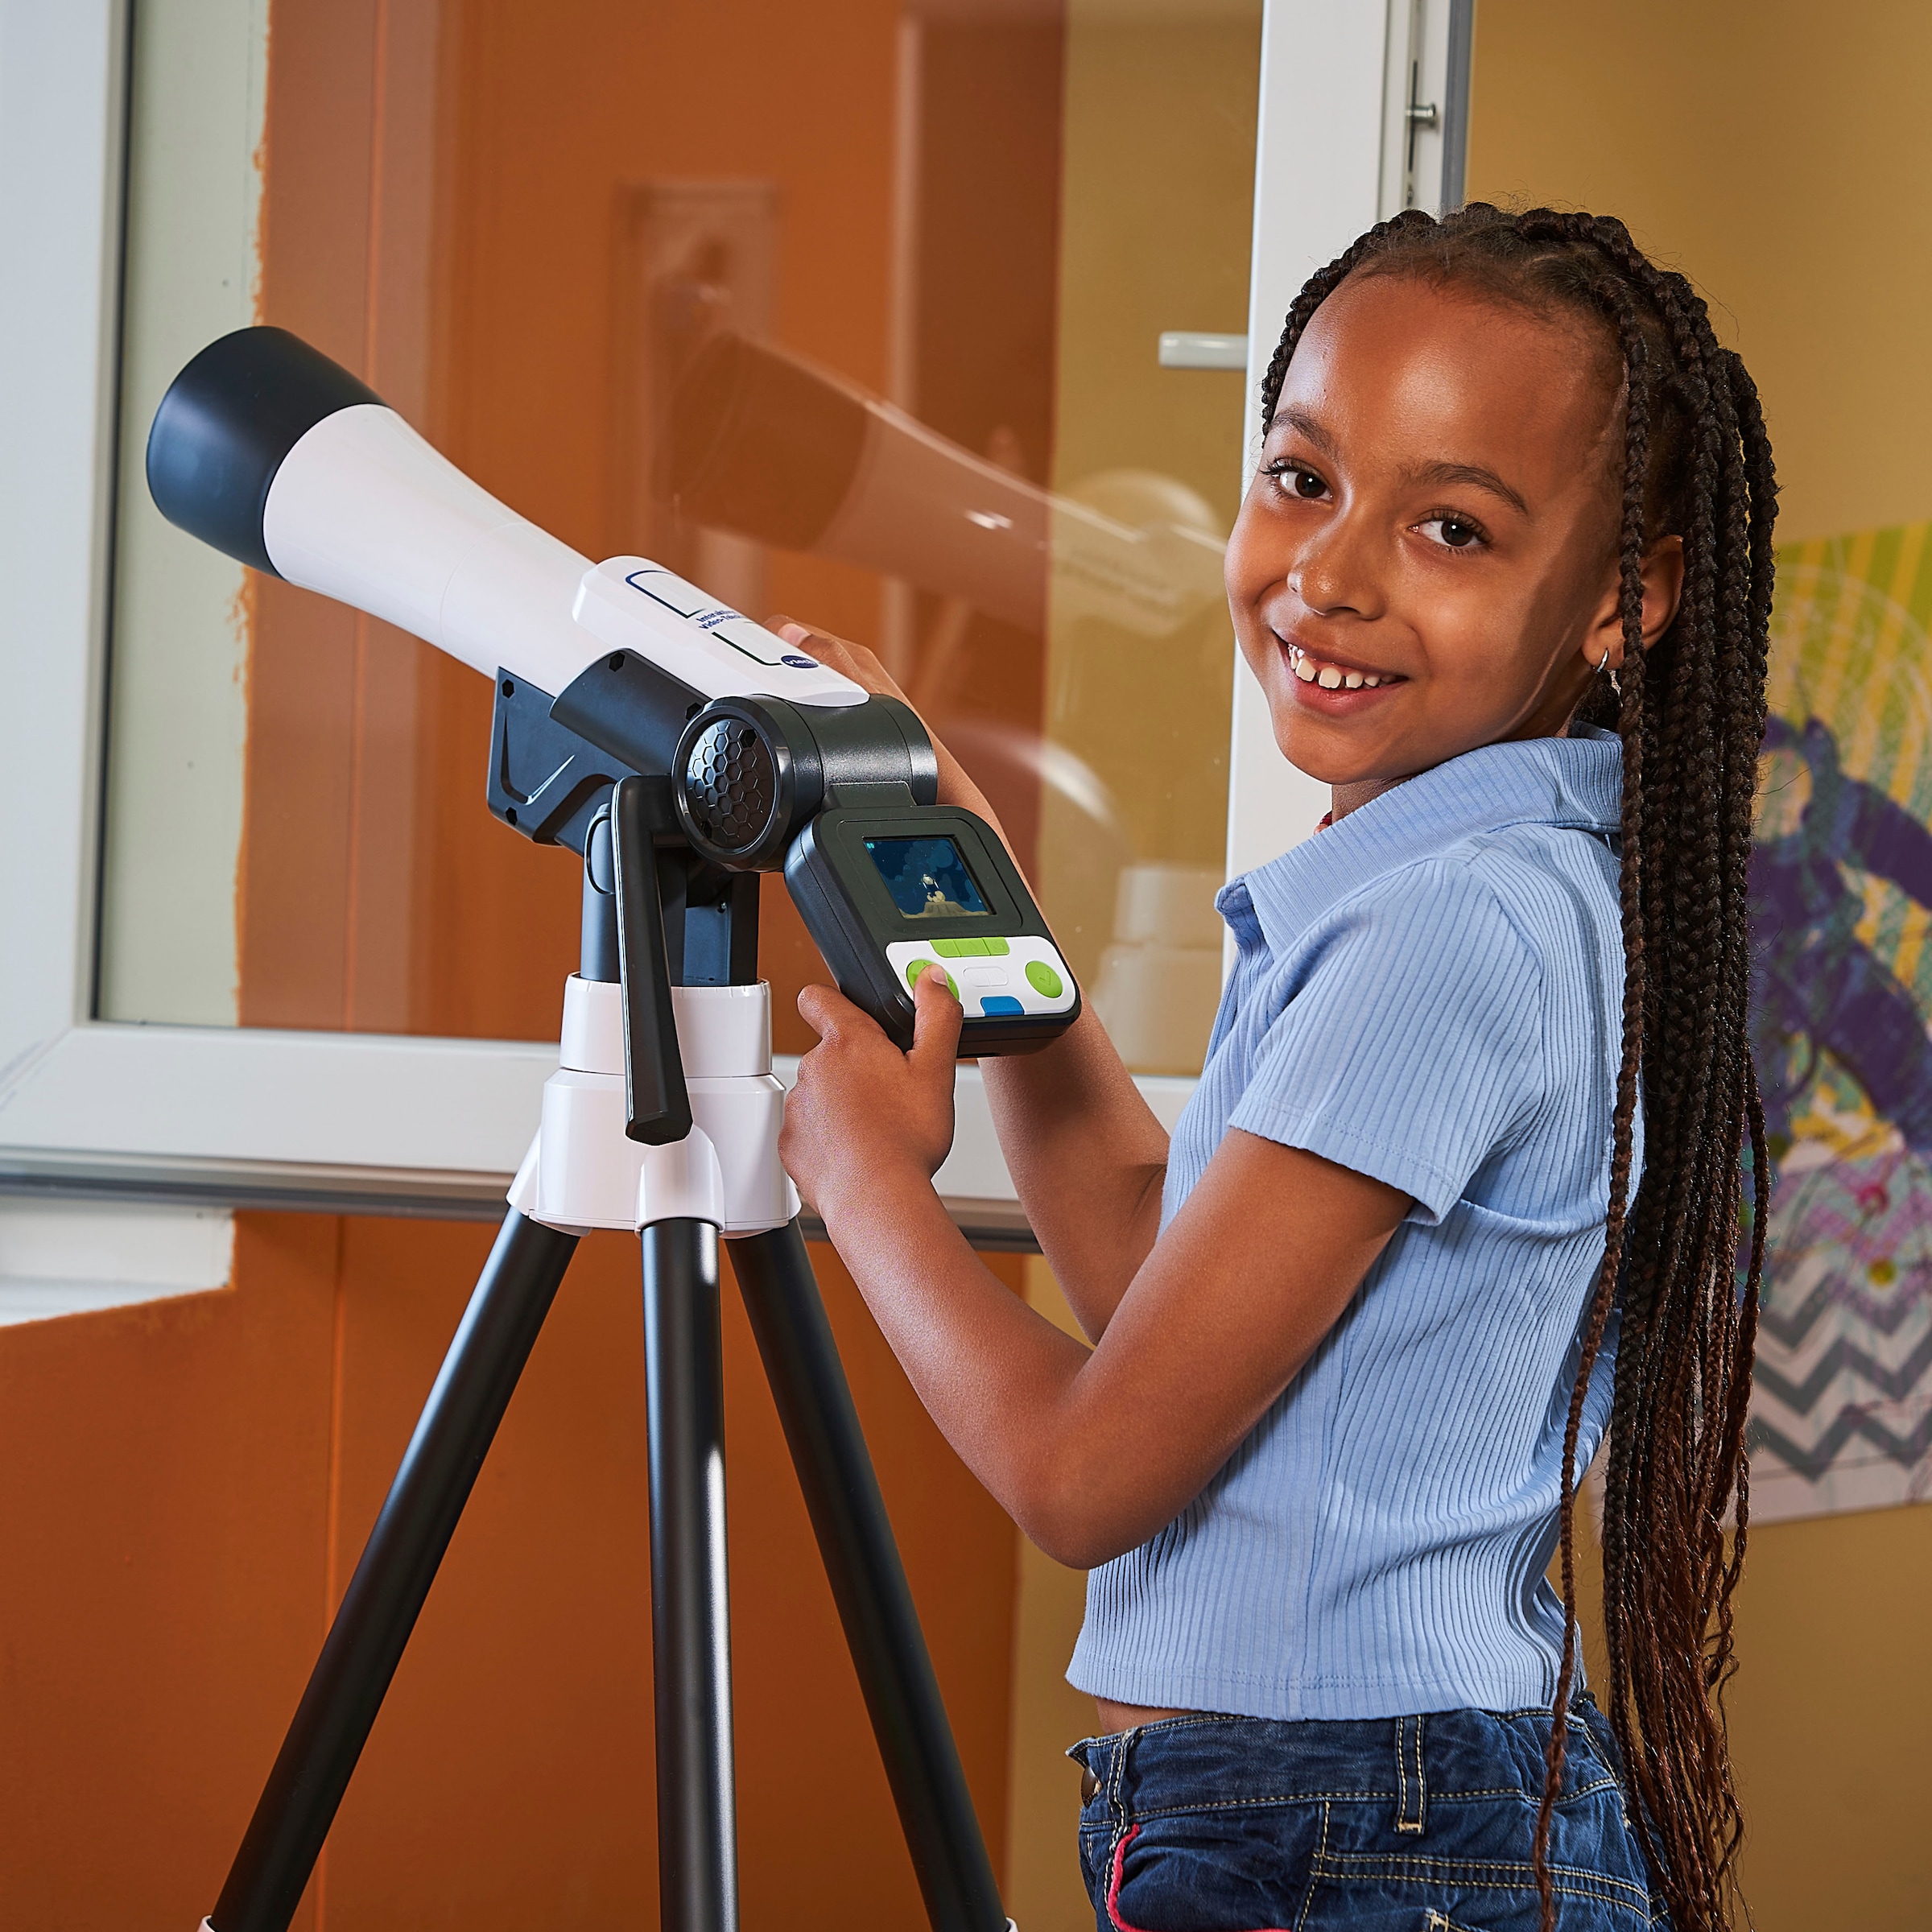 Vtech® Teleskop »Interaktives Video-Teleskop für Kinder«, mit NASA Lerninhalten und Spielen